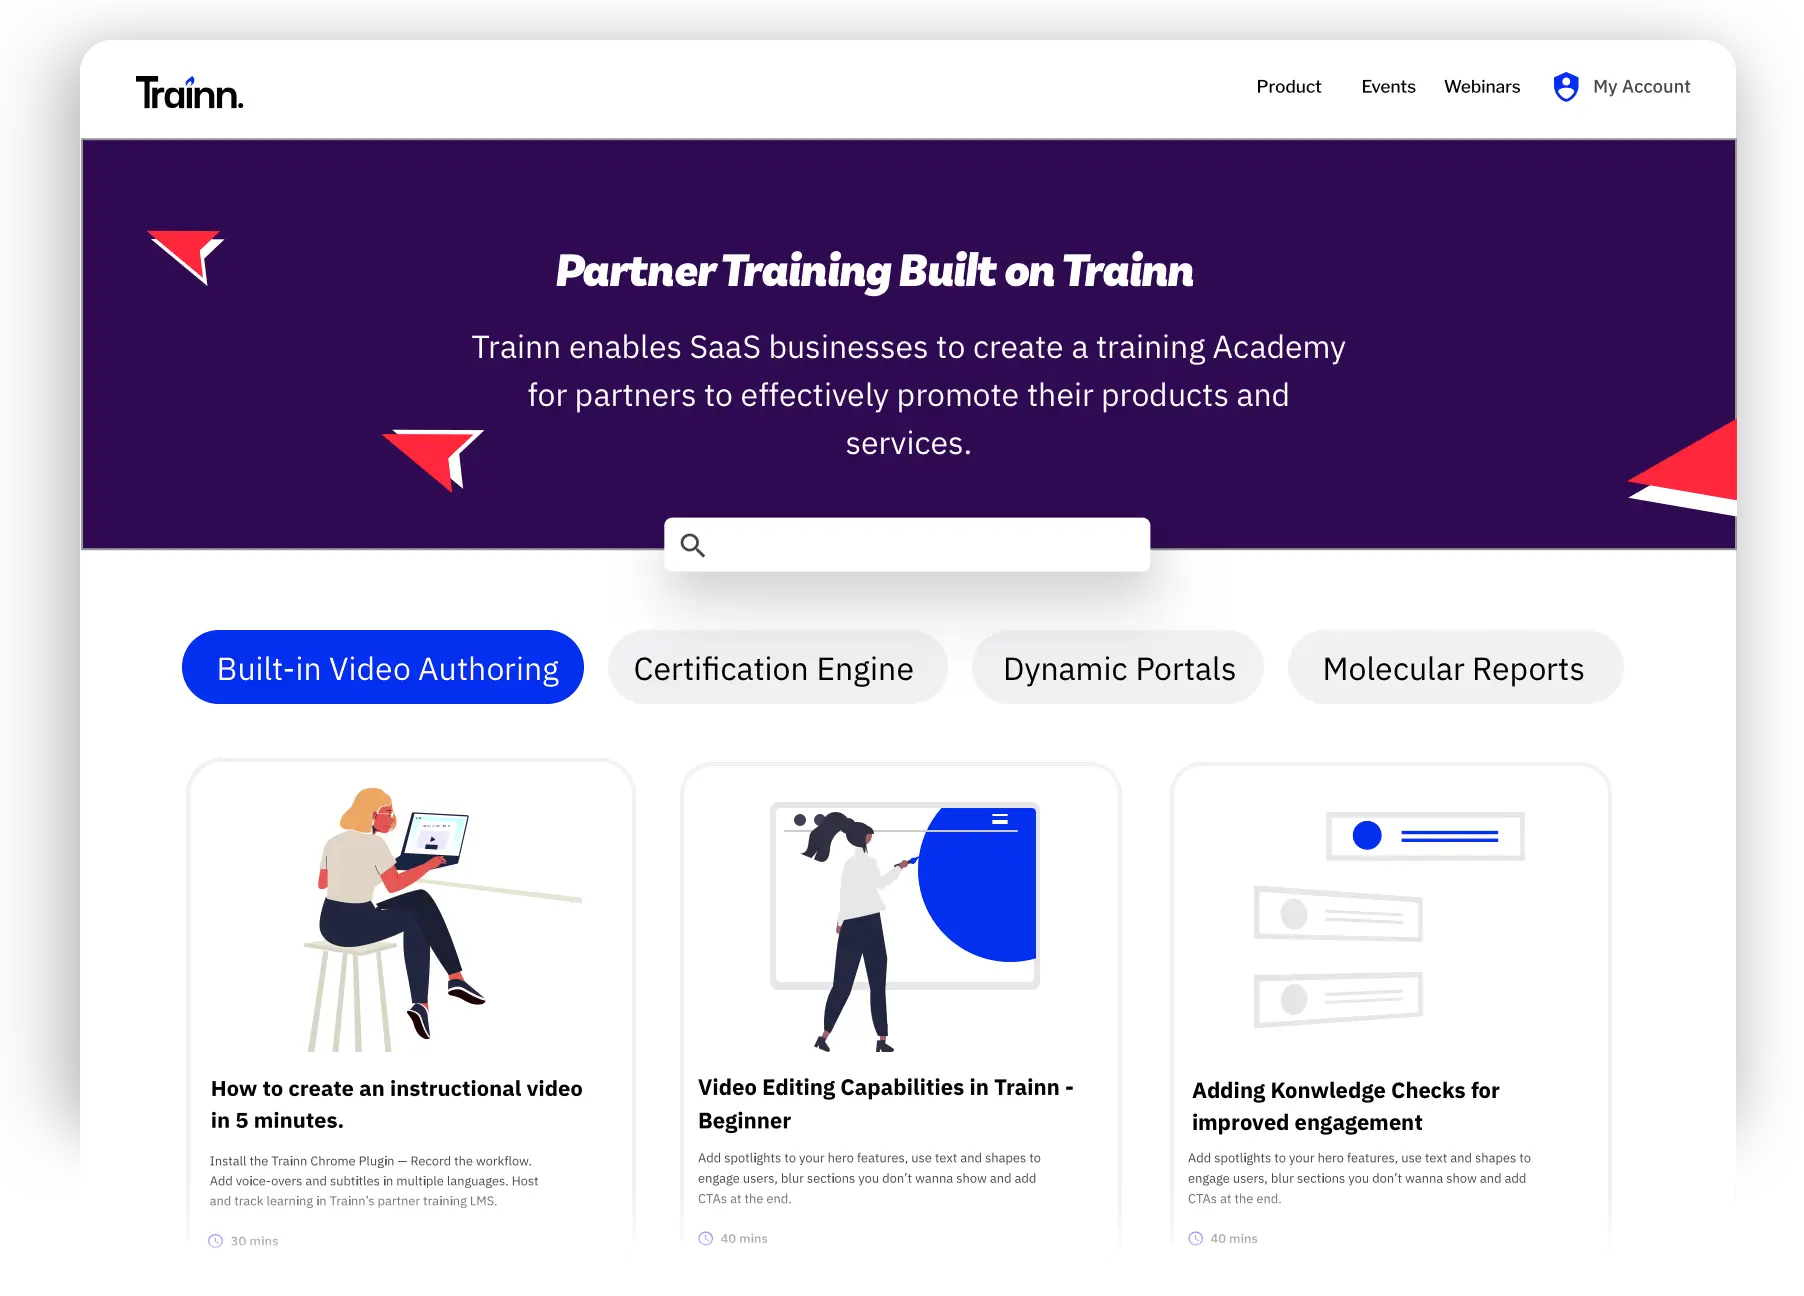 Partner Training built on Trainn | Buildops